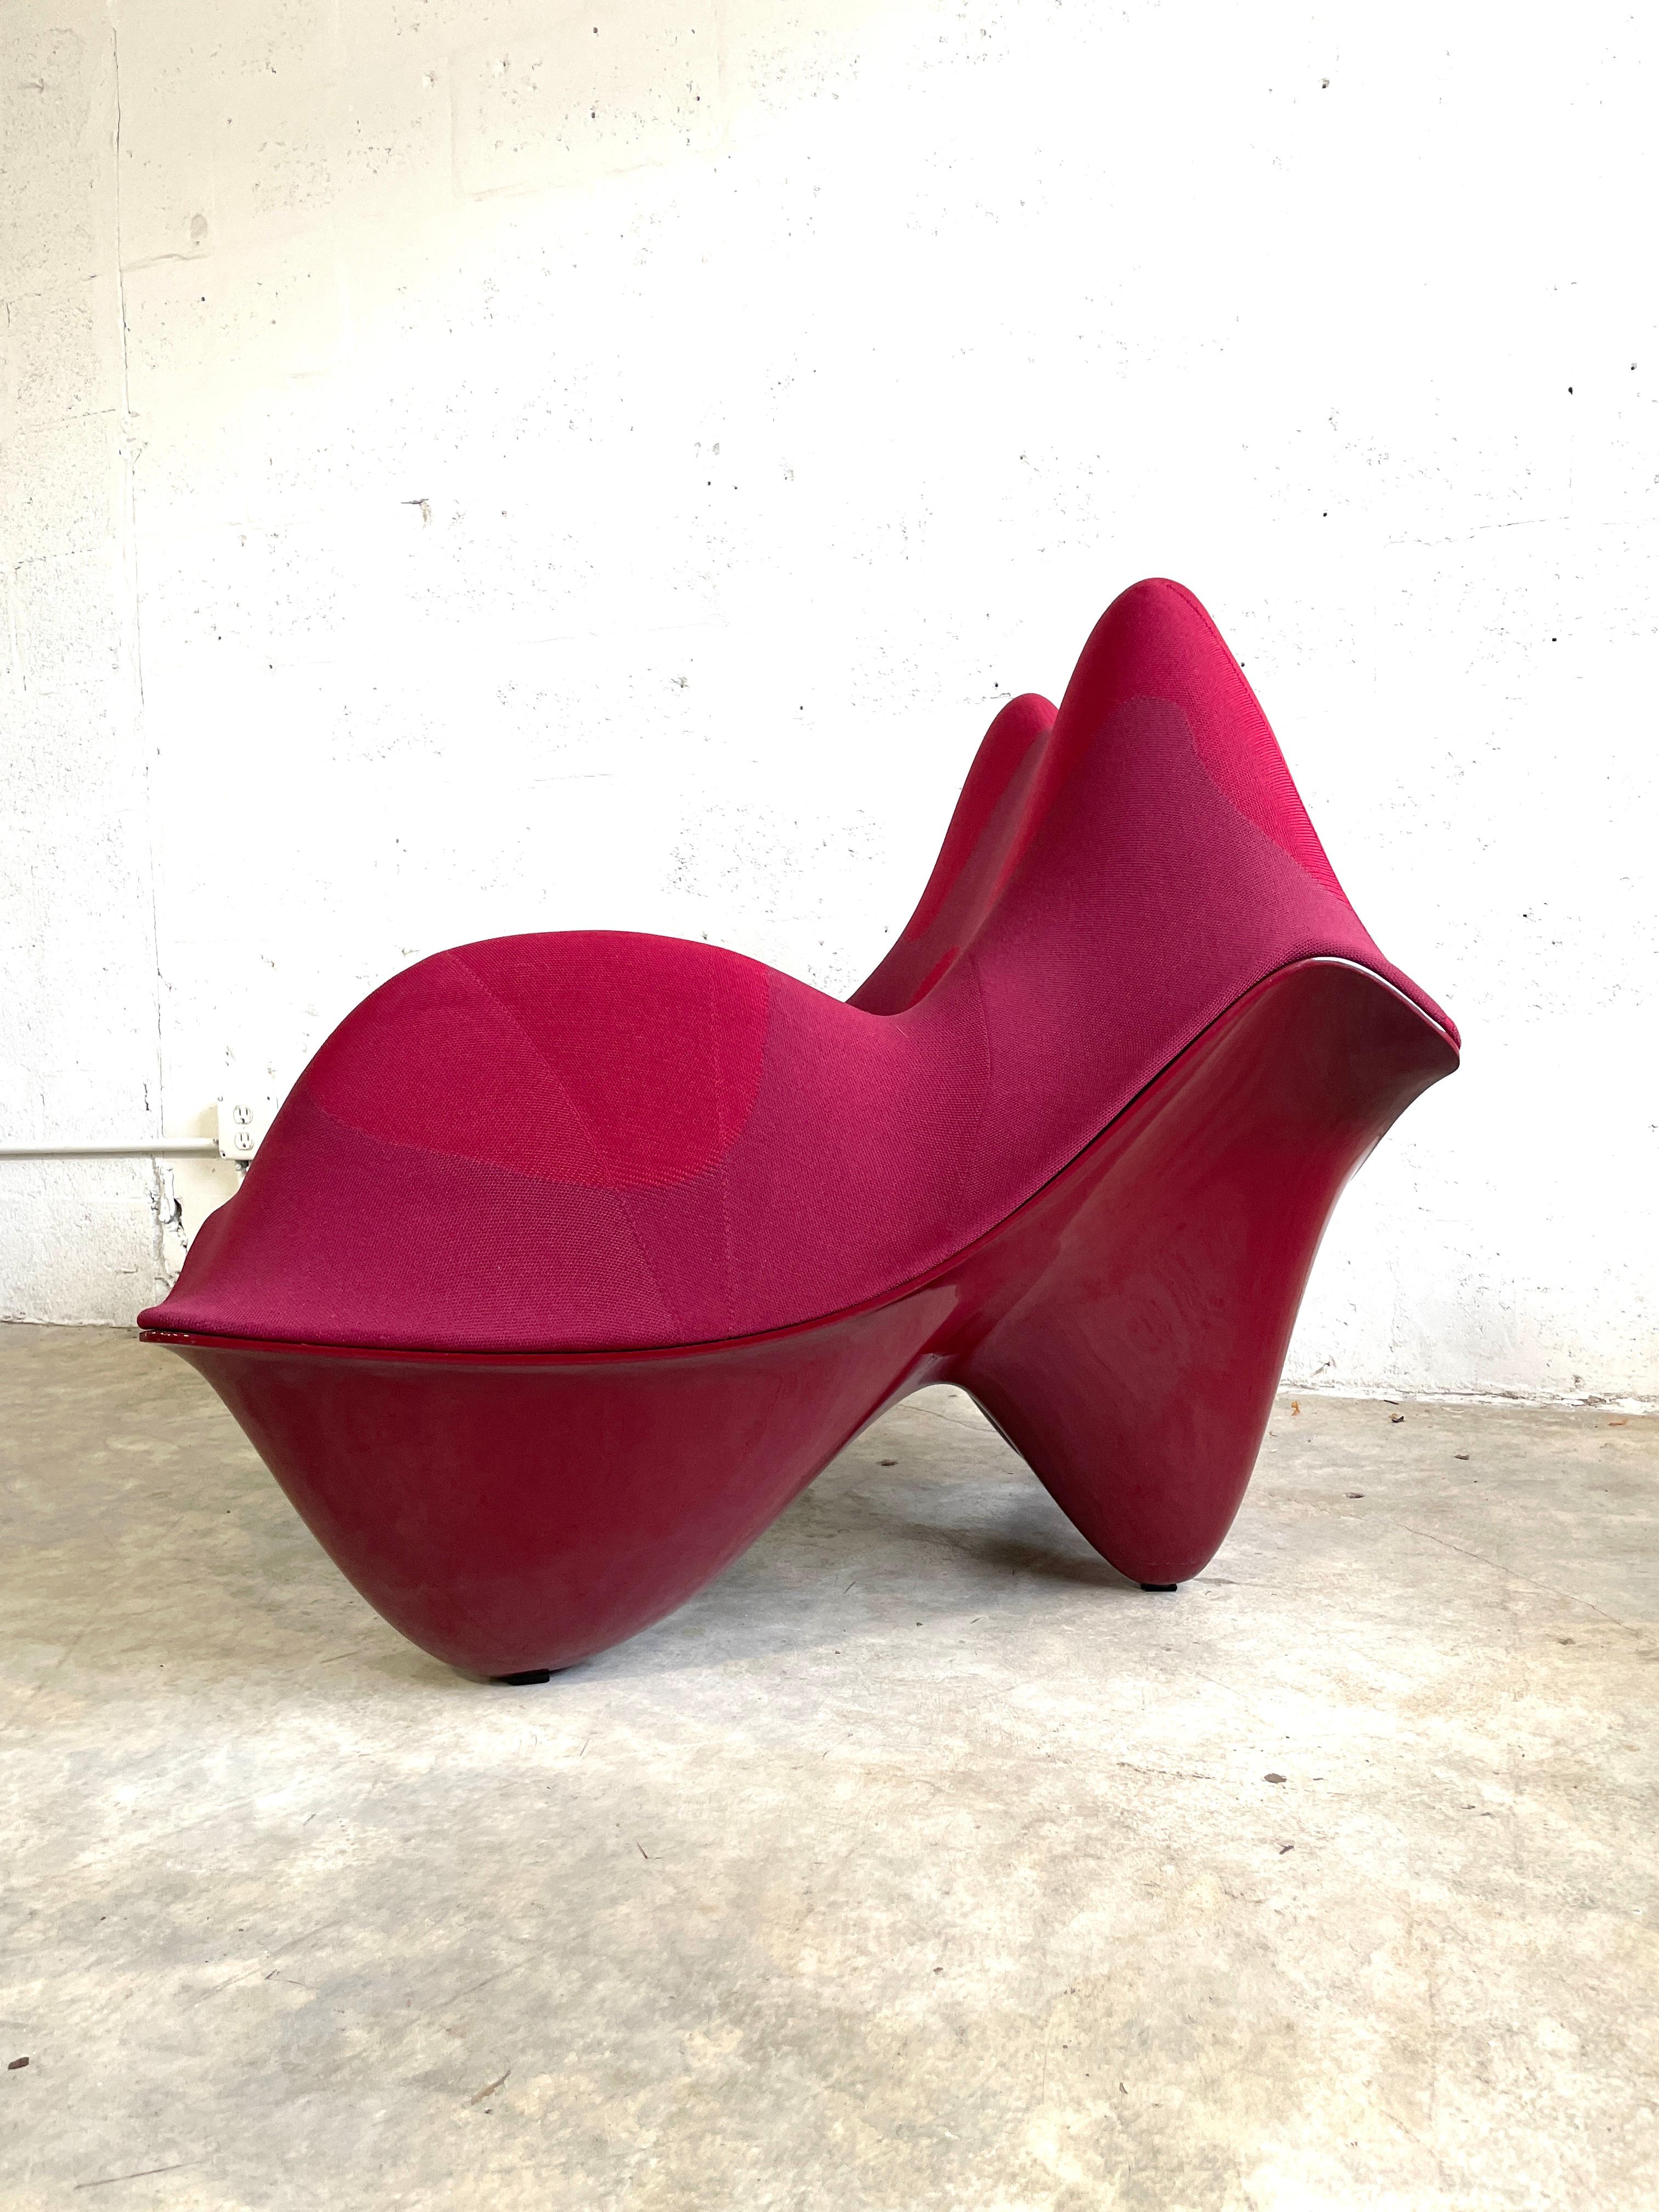 Modern Greg Lynn “Ravioli” Chair by Vitra For Sale